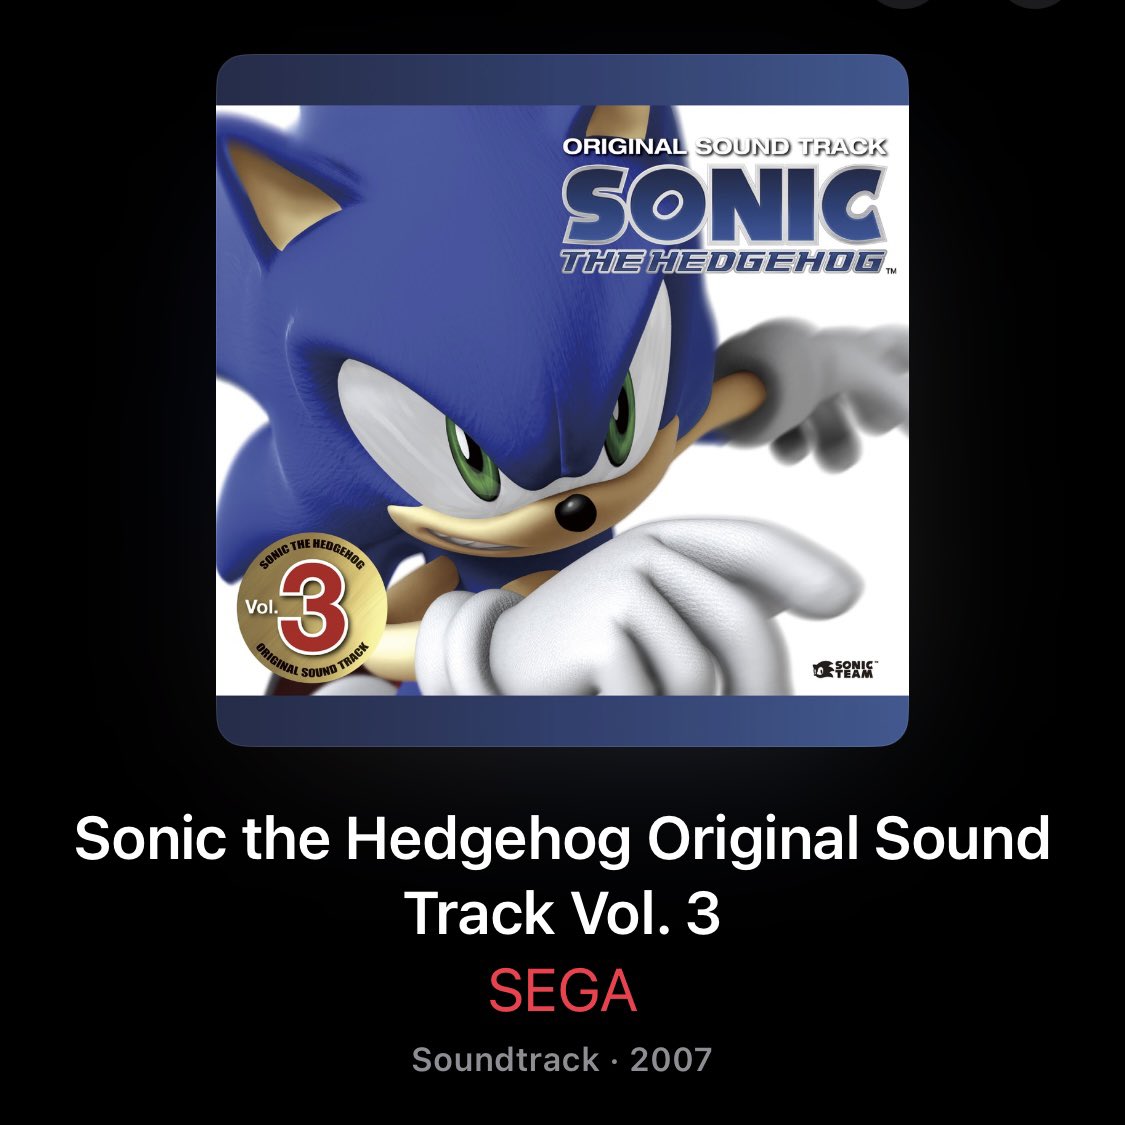  SONIC THE HEDGEHOG ORIGINAL SOUND TRACK Vol. 3 : SEGA